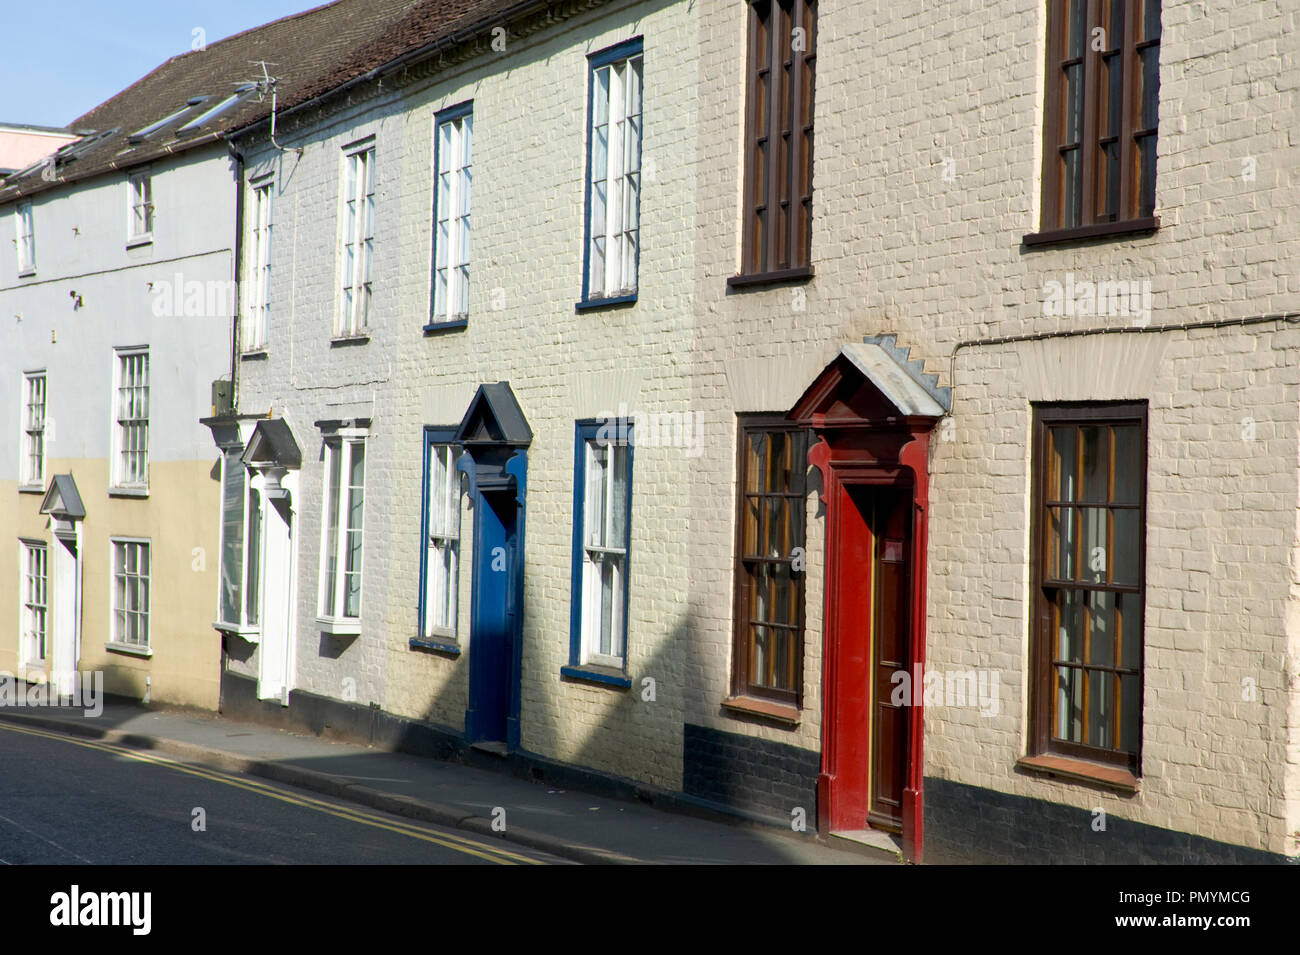 Terrace of roadside houses in Ledbury Herefordshire England UK Stock Photo